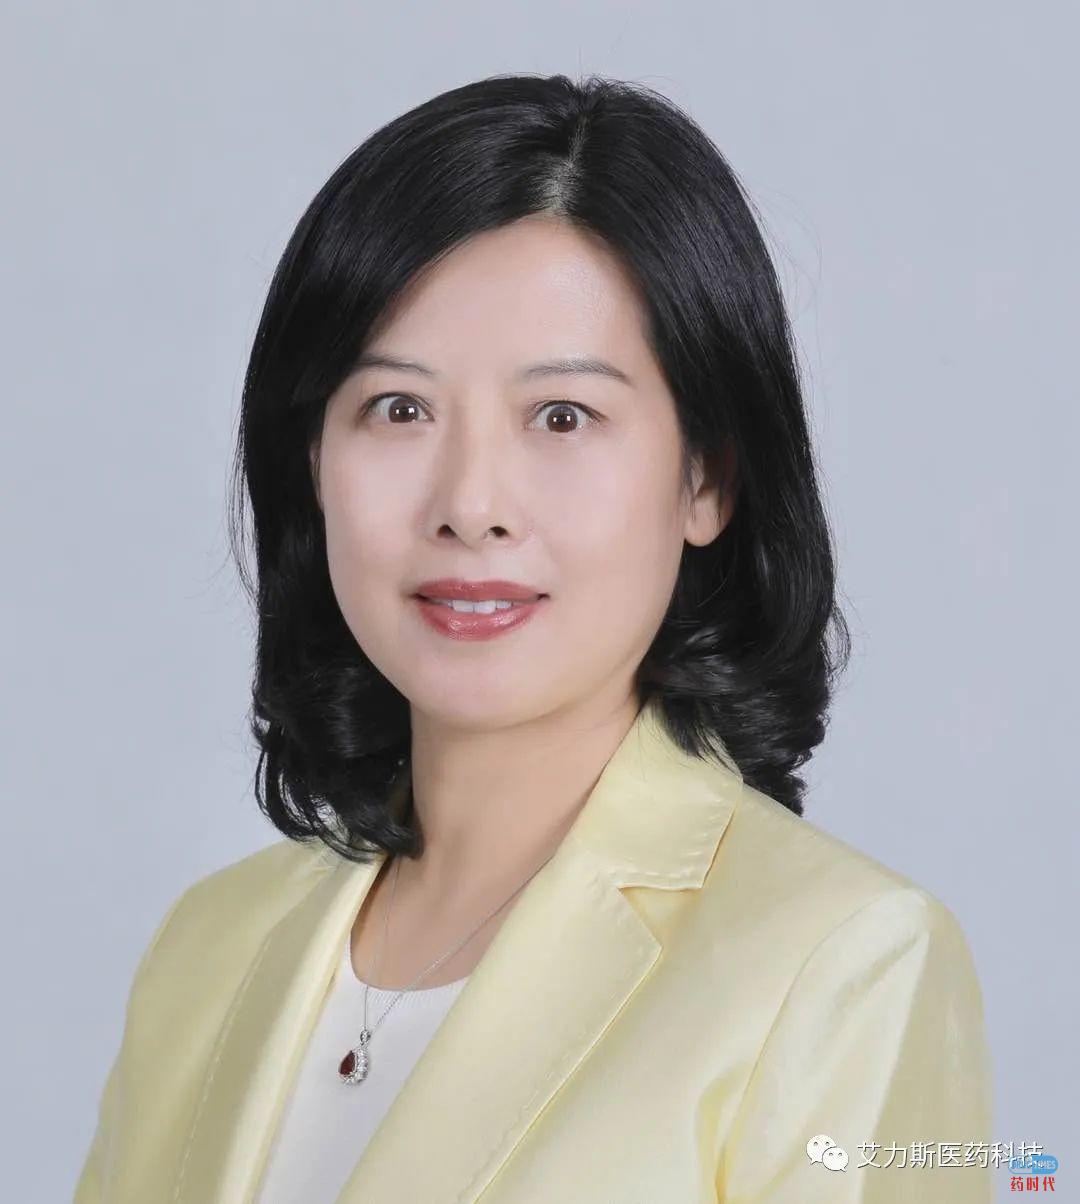 上海艾力斯医药科技股份有限公司任命牟艳萍为公司首席执行官